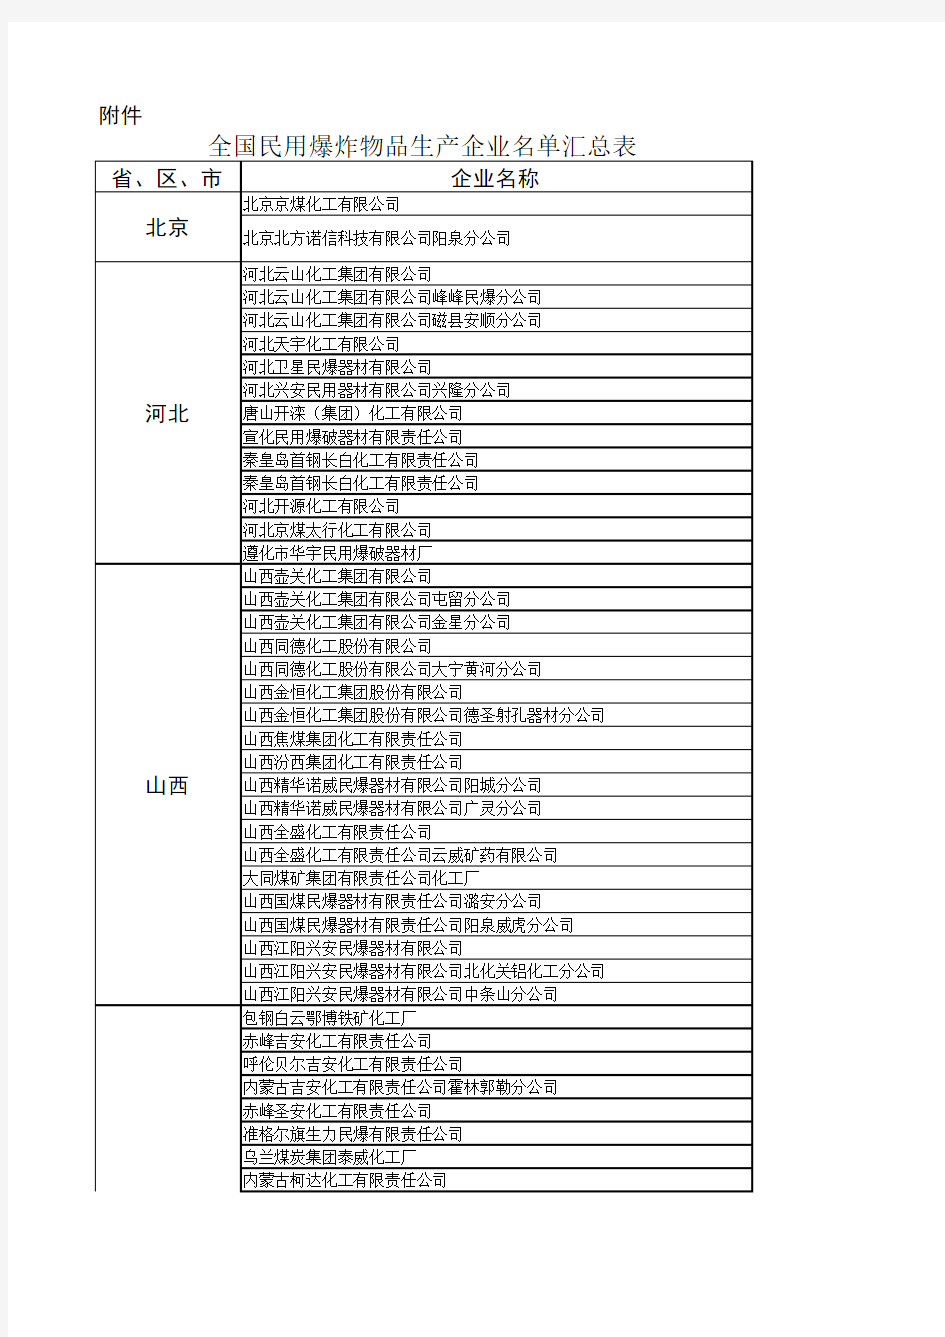 全国民用爆炸物品生产企业名单汇总表